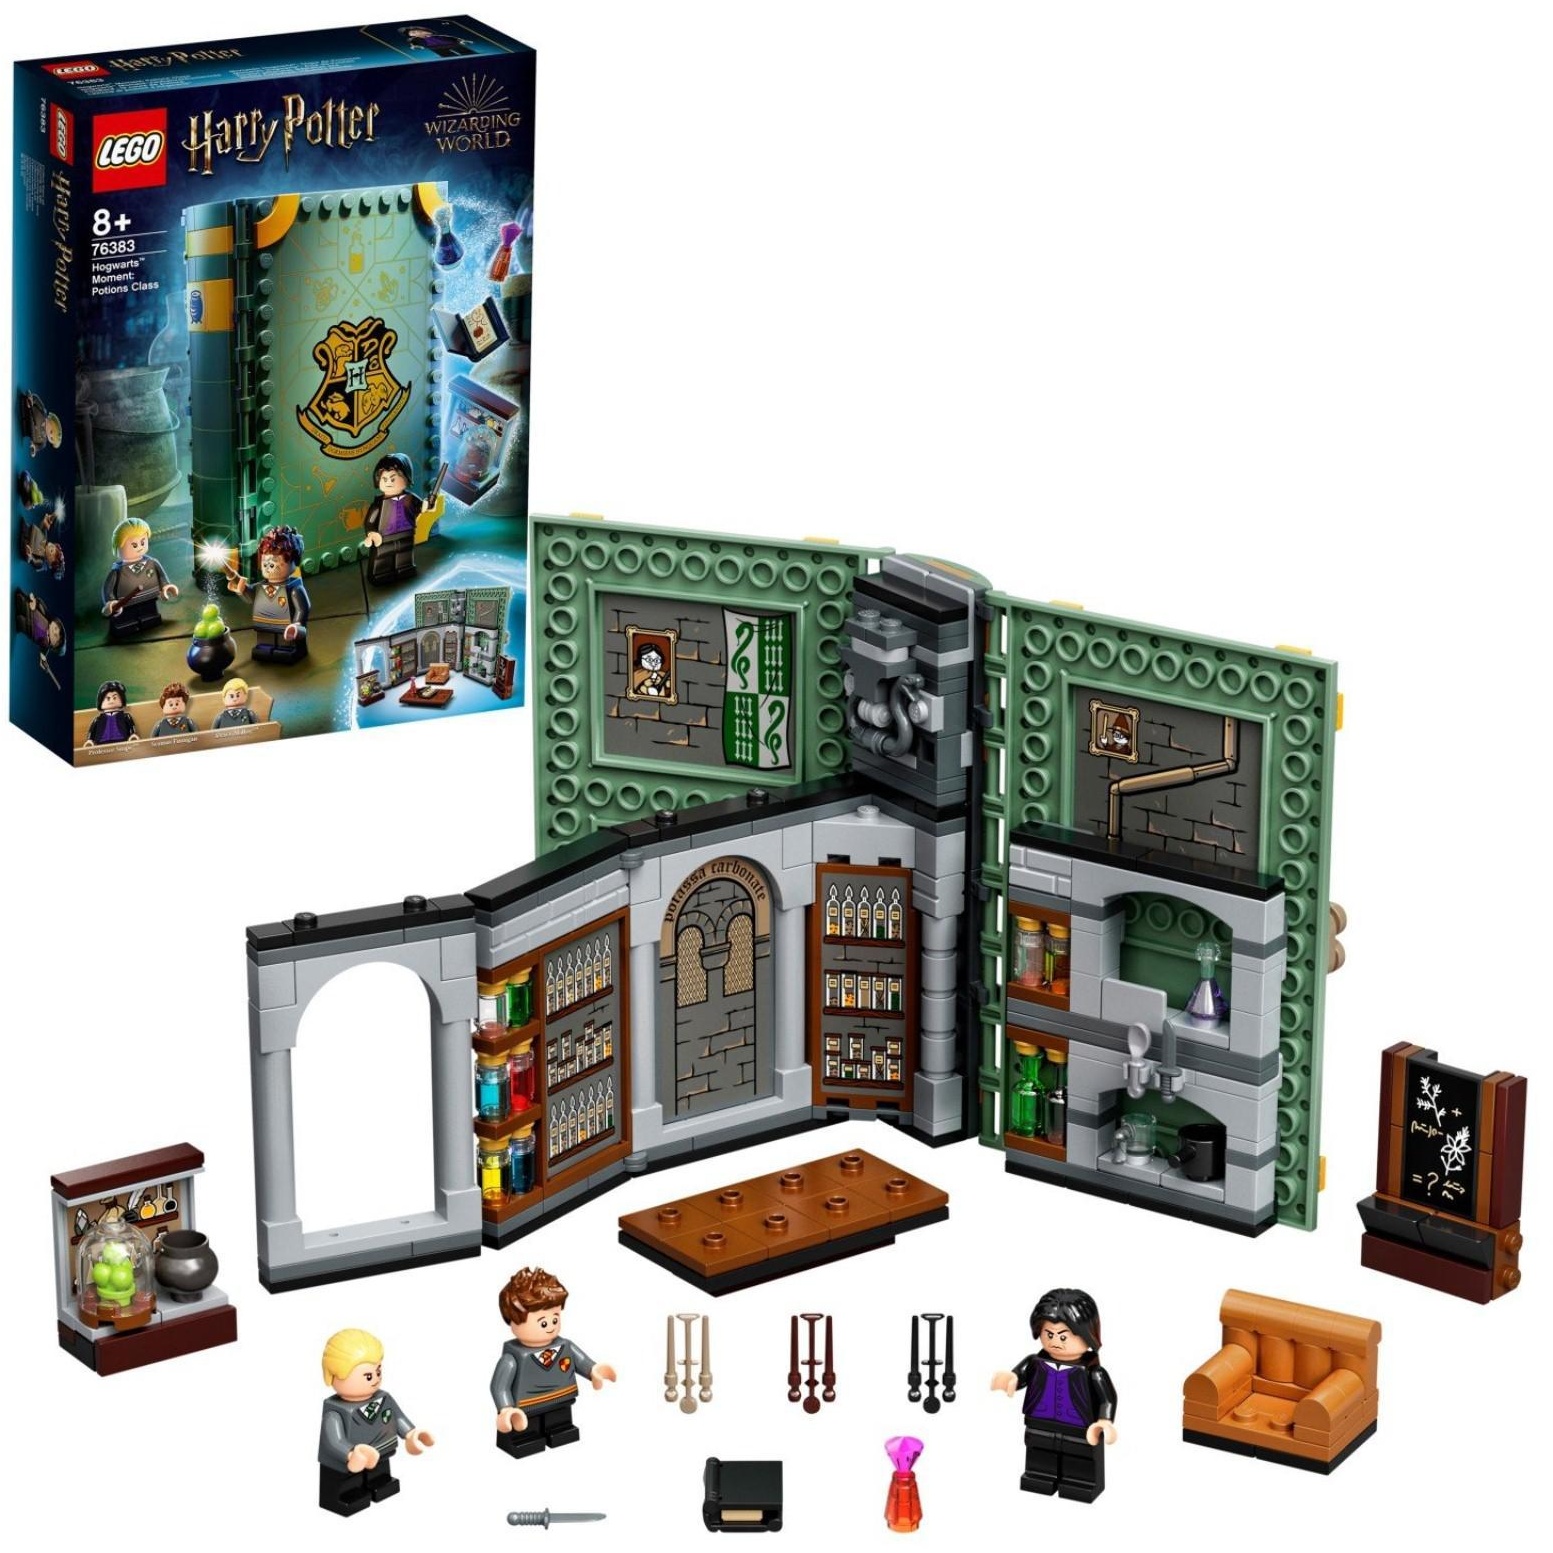 Констр-р LEGO Harry Potter Учёба в Хогвартсе: Урок зельеварения 76383